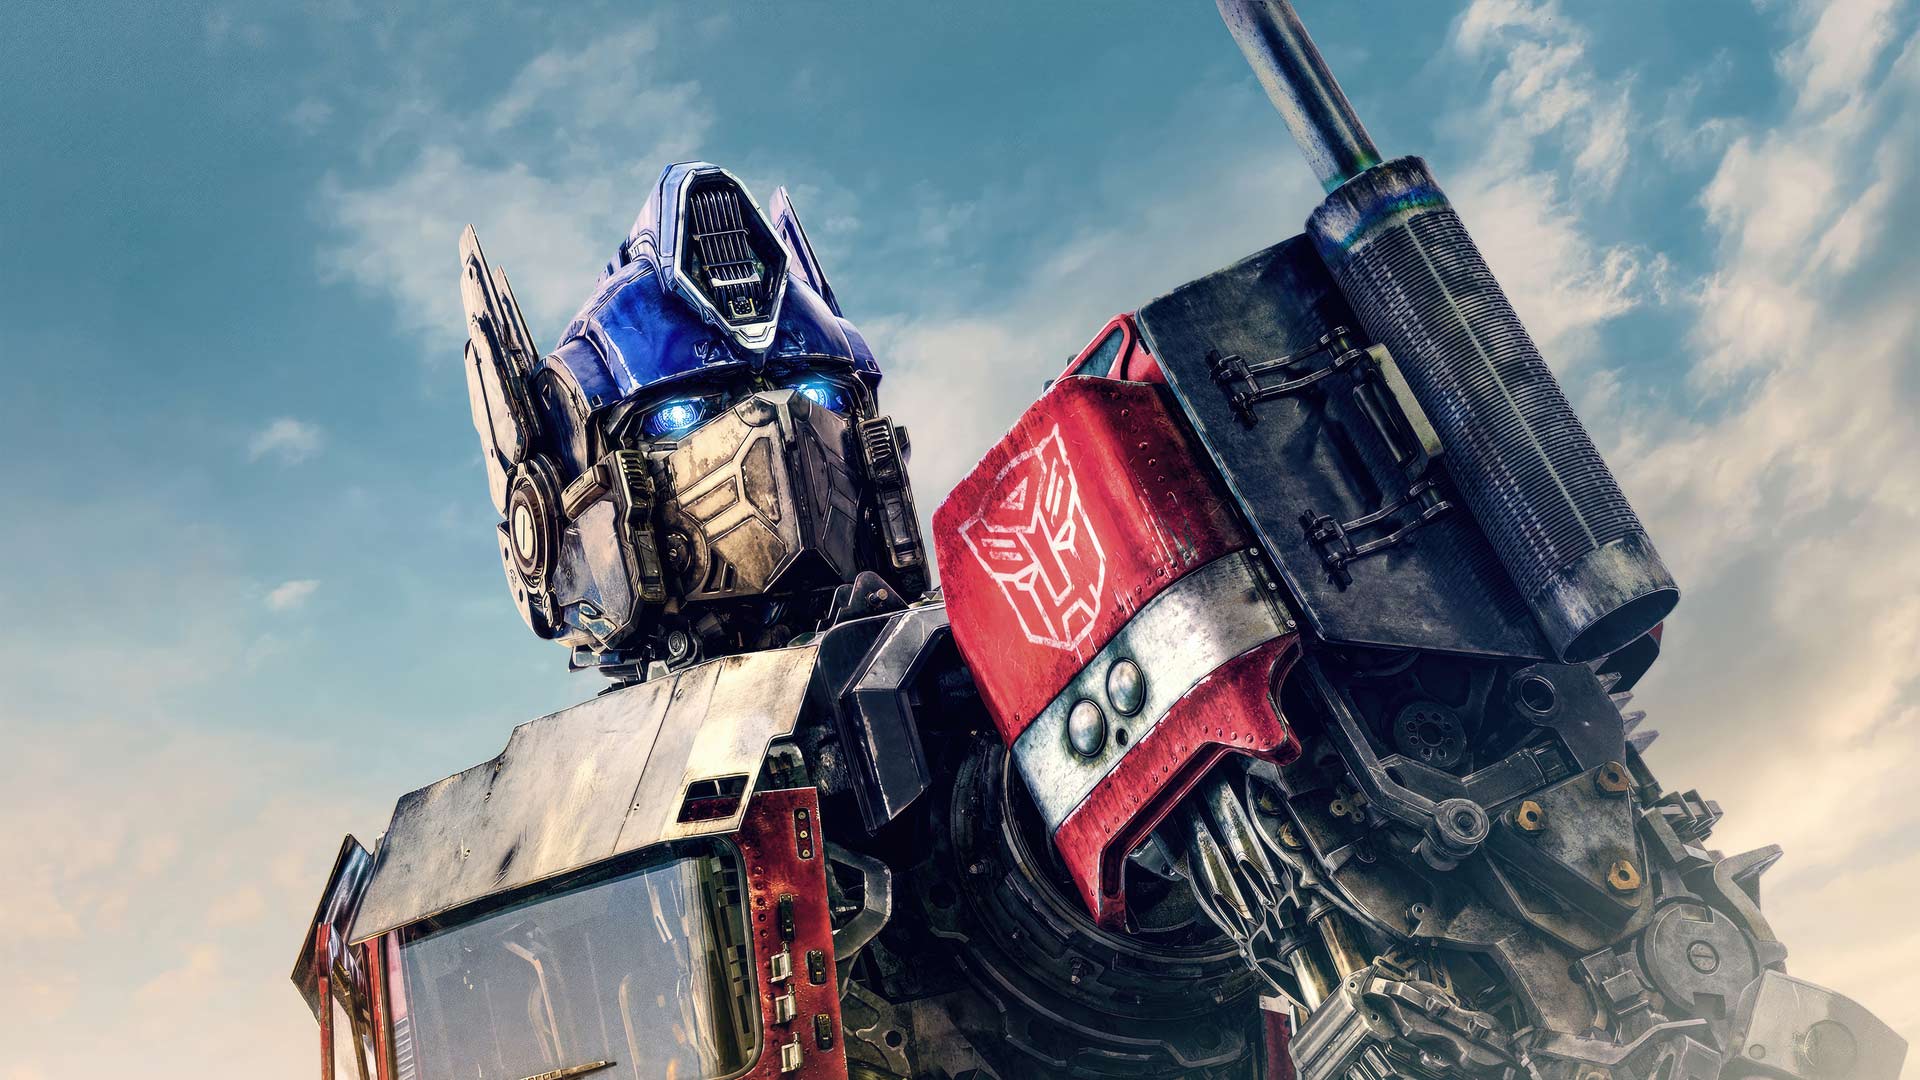 کراس‌اور فرنچایزهای Transformers و G.I. Joe ساخته می‌شود